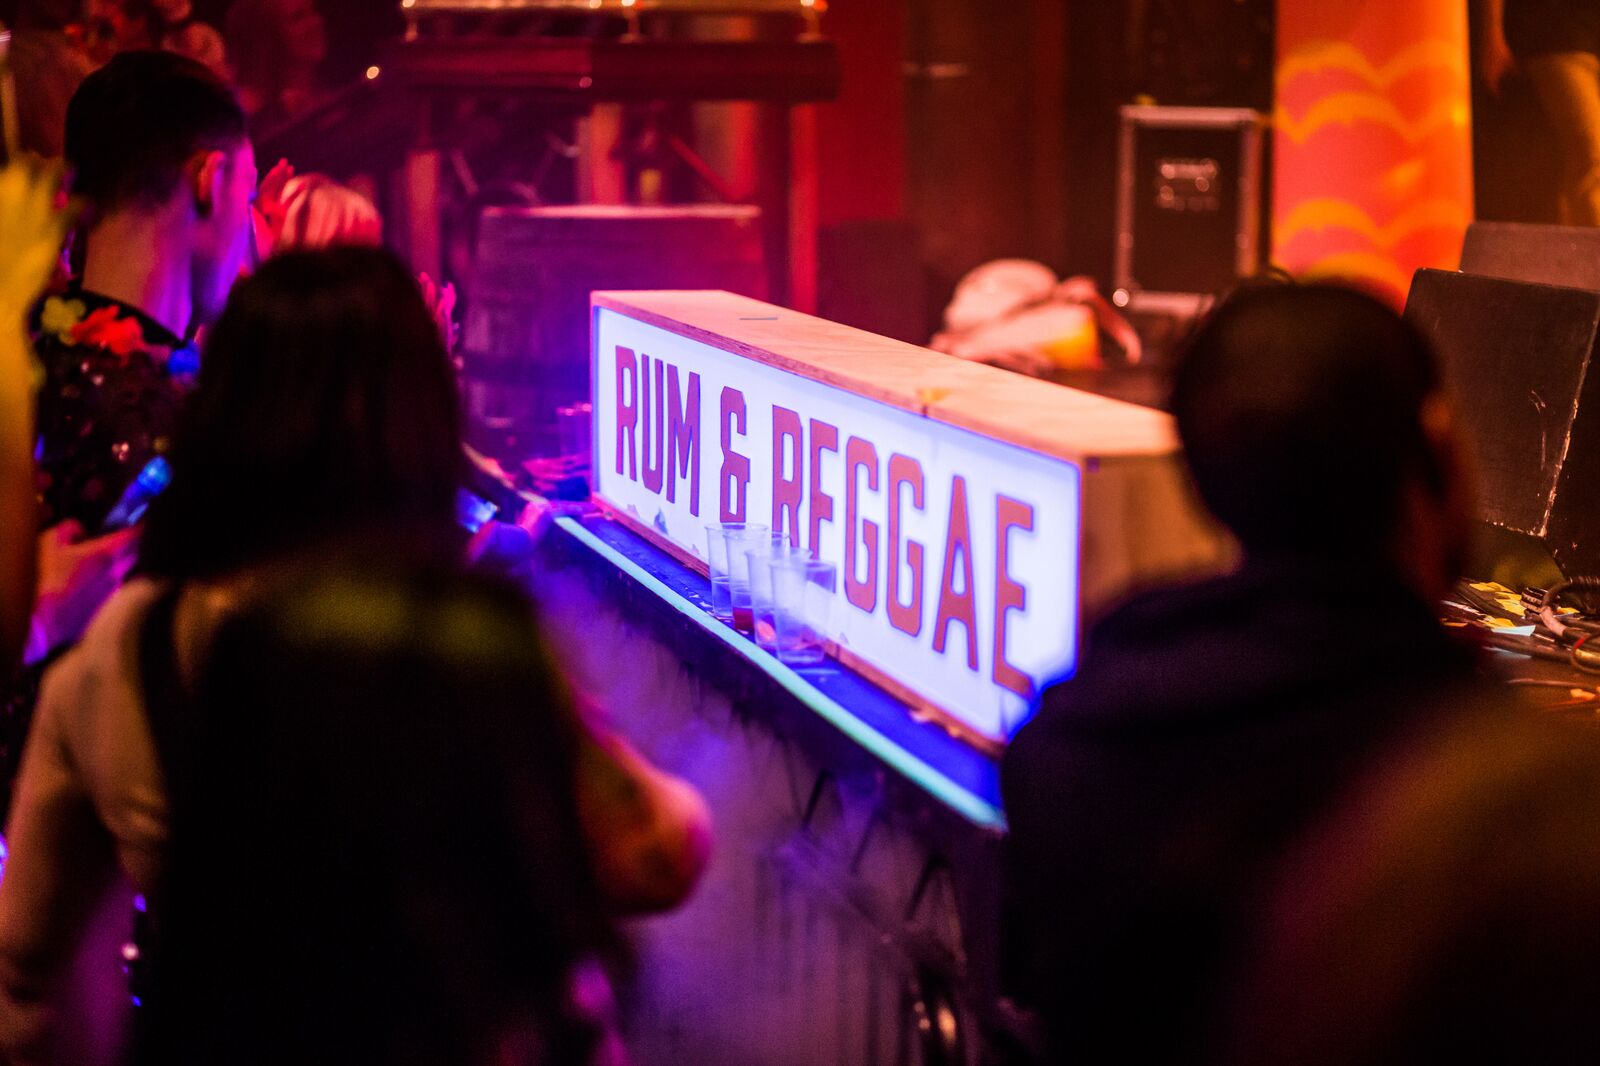 rum reggae leicester